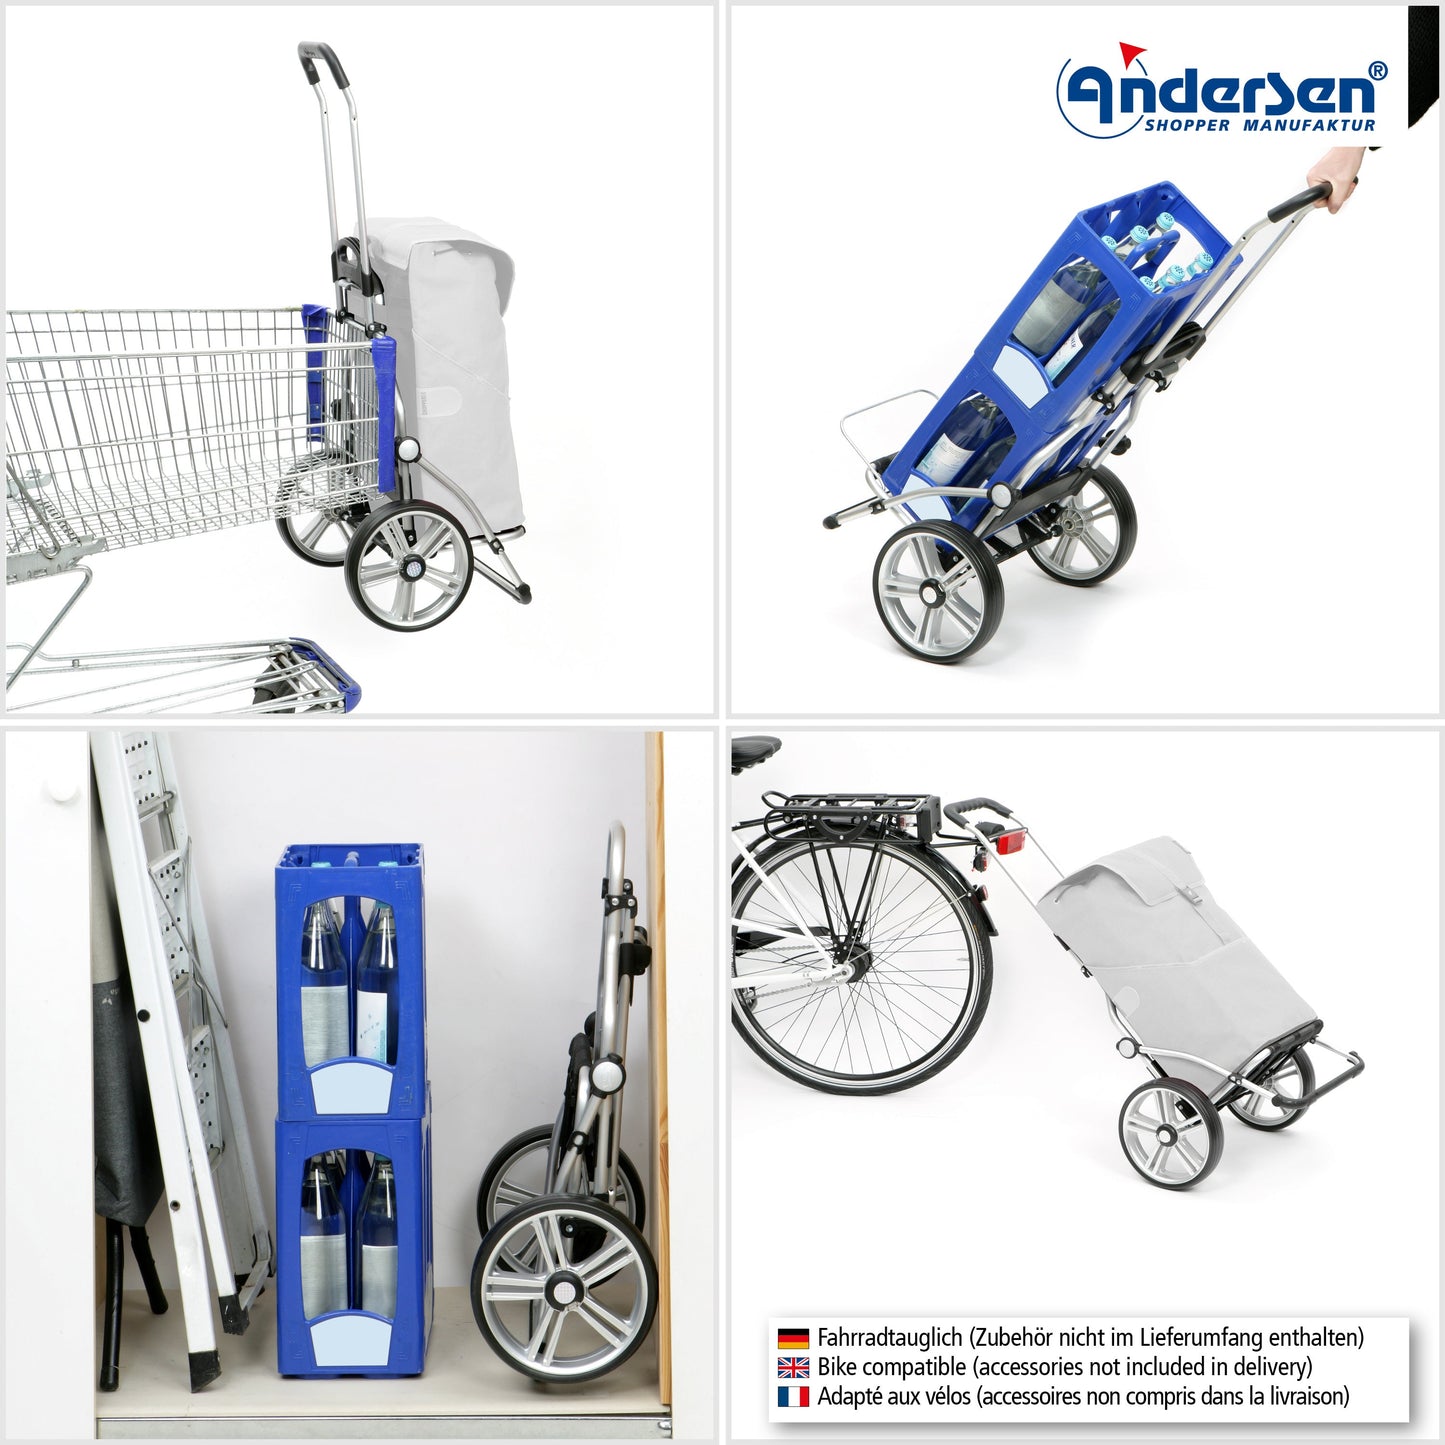 Andersen Shopper Manufaktur-Royal Shopper (Kugellagerrad 25 cm) Hydro 2.1 blau-www.shopping-trolley.ch-bild4